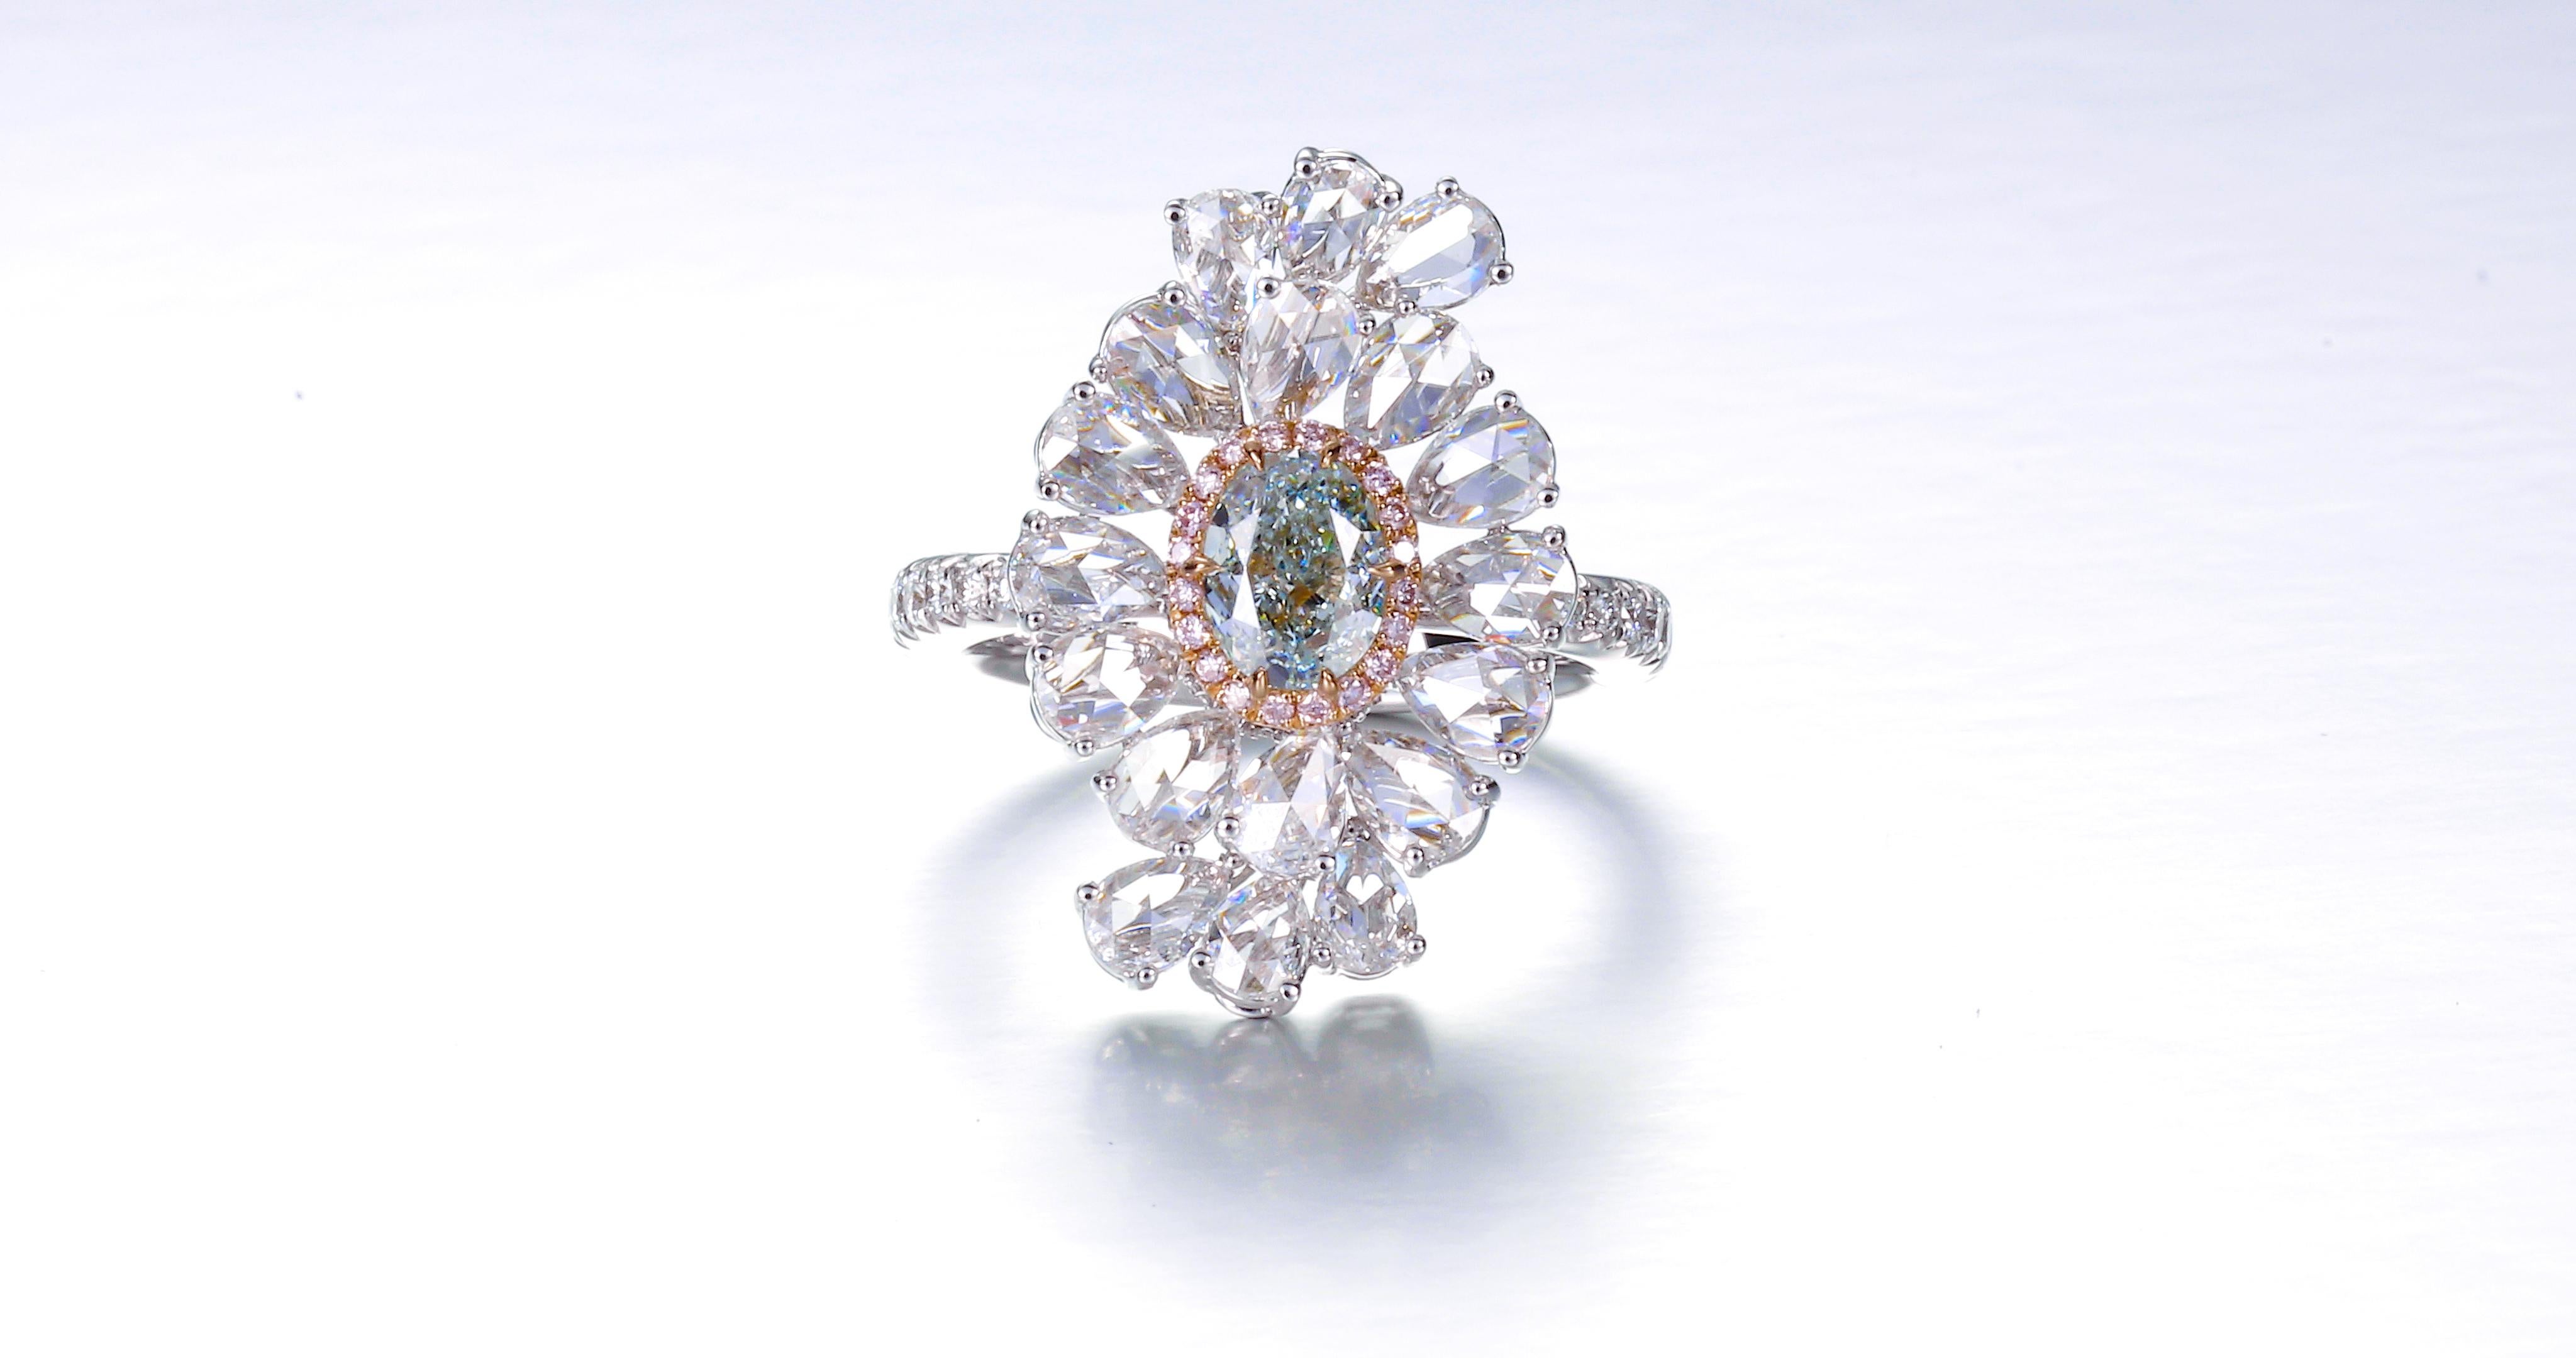 Wir präsentieren ein wahrhaft bezauberndes und hypnotisierendes Schmuckstück mit einem bemerkenswerten Herzstück - einem GIA-zertifizierten 0,83-karätigen natürlichen ovalen Fancy-Diamanten von blau-grüner Farbe. Dieser exquisite Edelstein steht im